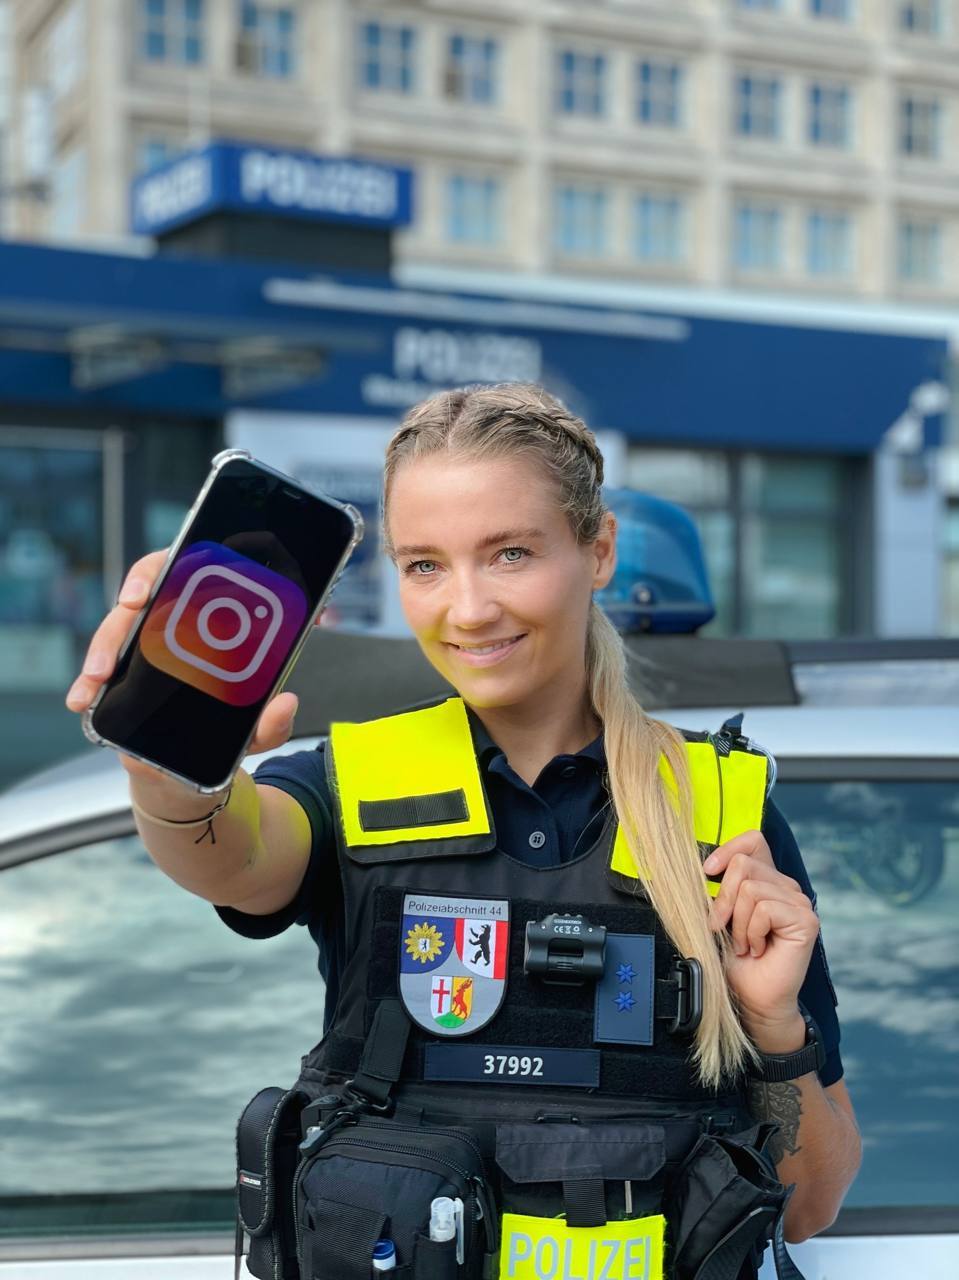 Polizei auf Instagram - Selfiestick und Schlagstock